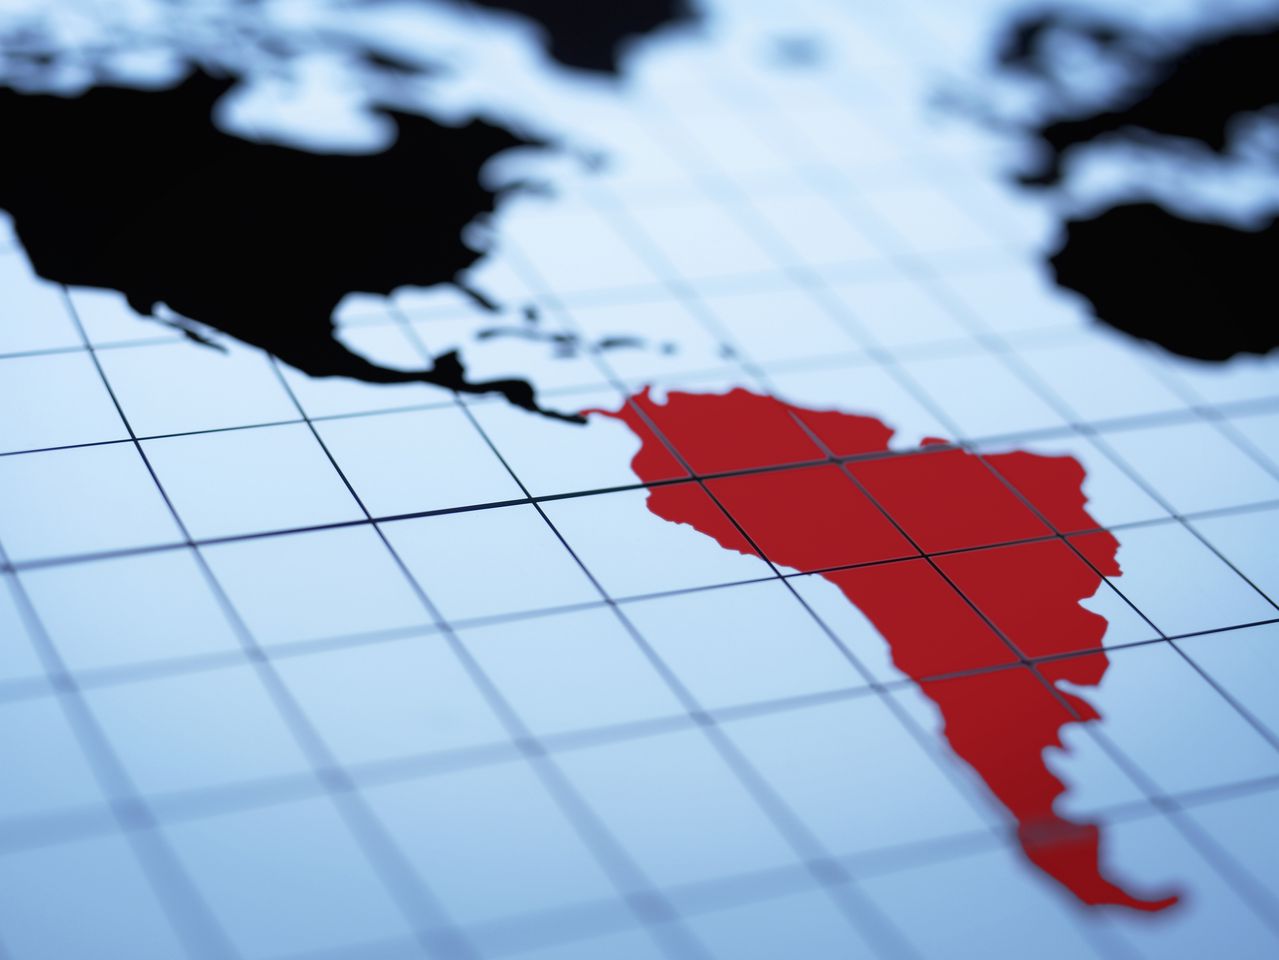 América Latina - Colombia - Mapamundi